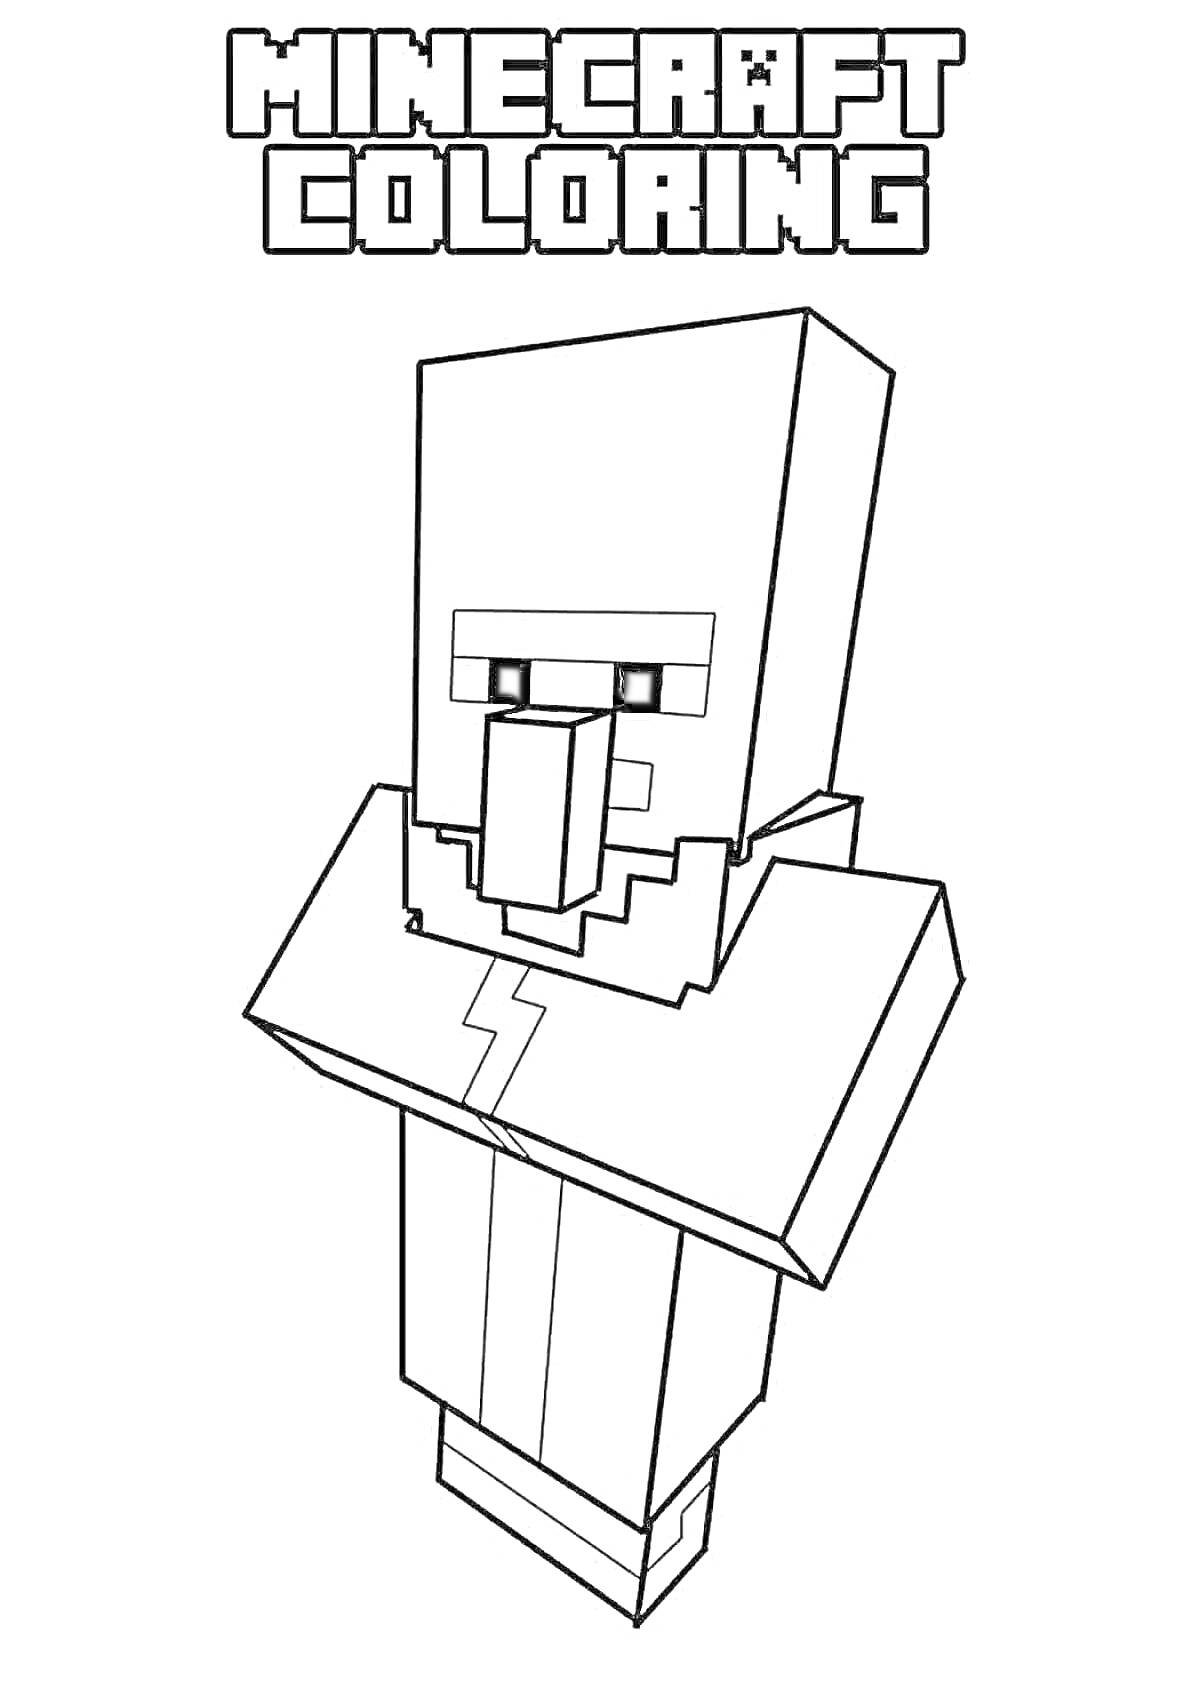 Раскраска Растровое изображение персонажа Minecraft, обведенное черными линиями, на котором изображен житель деревни с характерным, прямоугольным дизайном. Надпись 